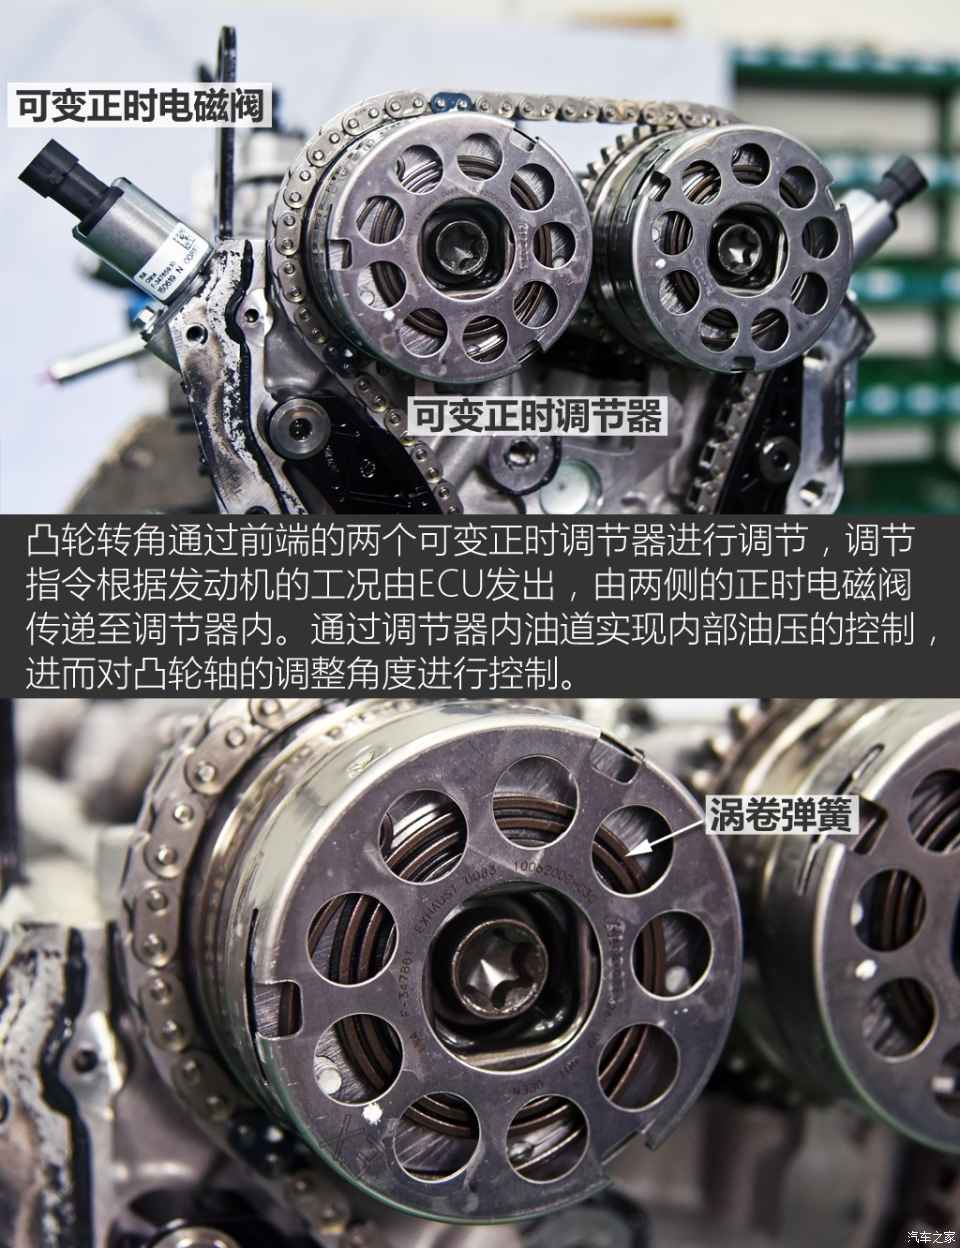 5年研发/直喷技术 解析江淮1.5t发动机